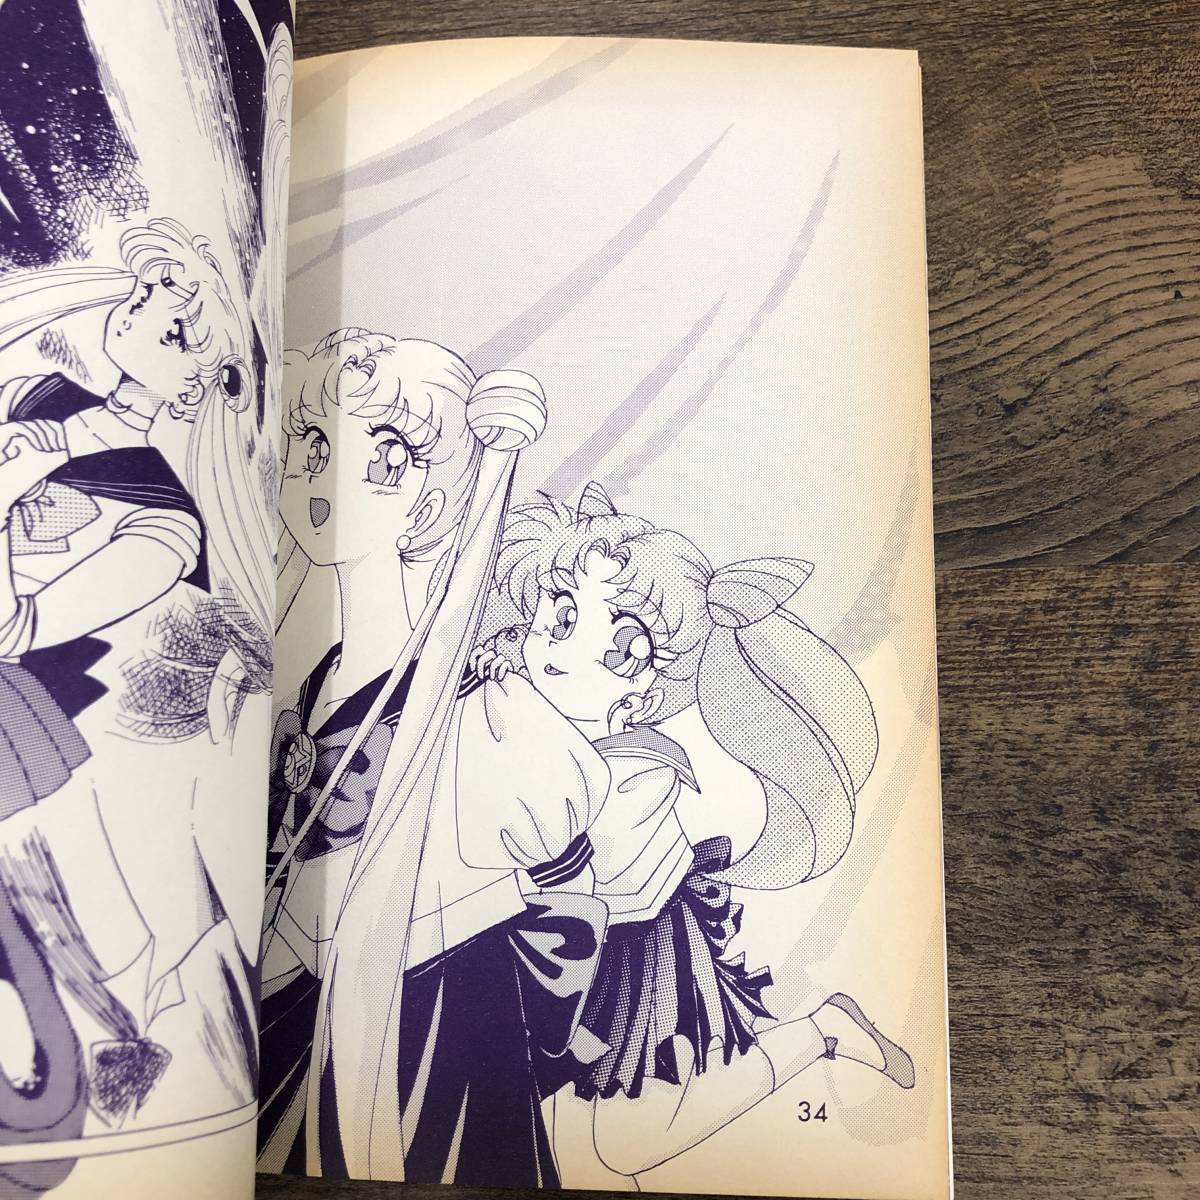 G-5251#CRYSTAL.PRINCESS MOON. пожалуйста # Sailor Moon журнал узкого круга литераторов #STUDIO....*... минут .#1994 год 4 месяц 17 день выпуск #